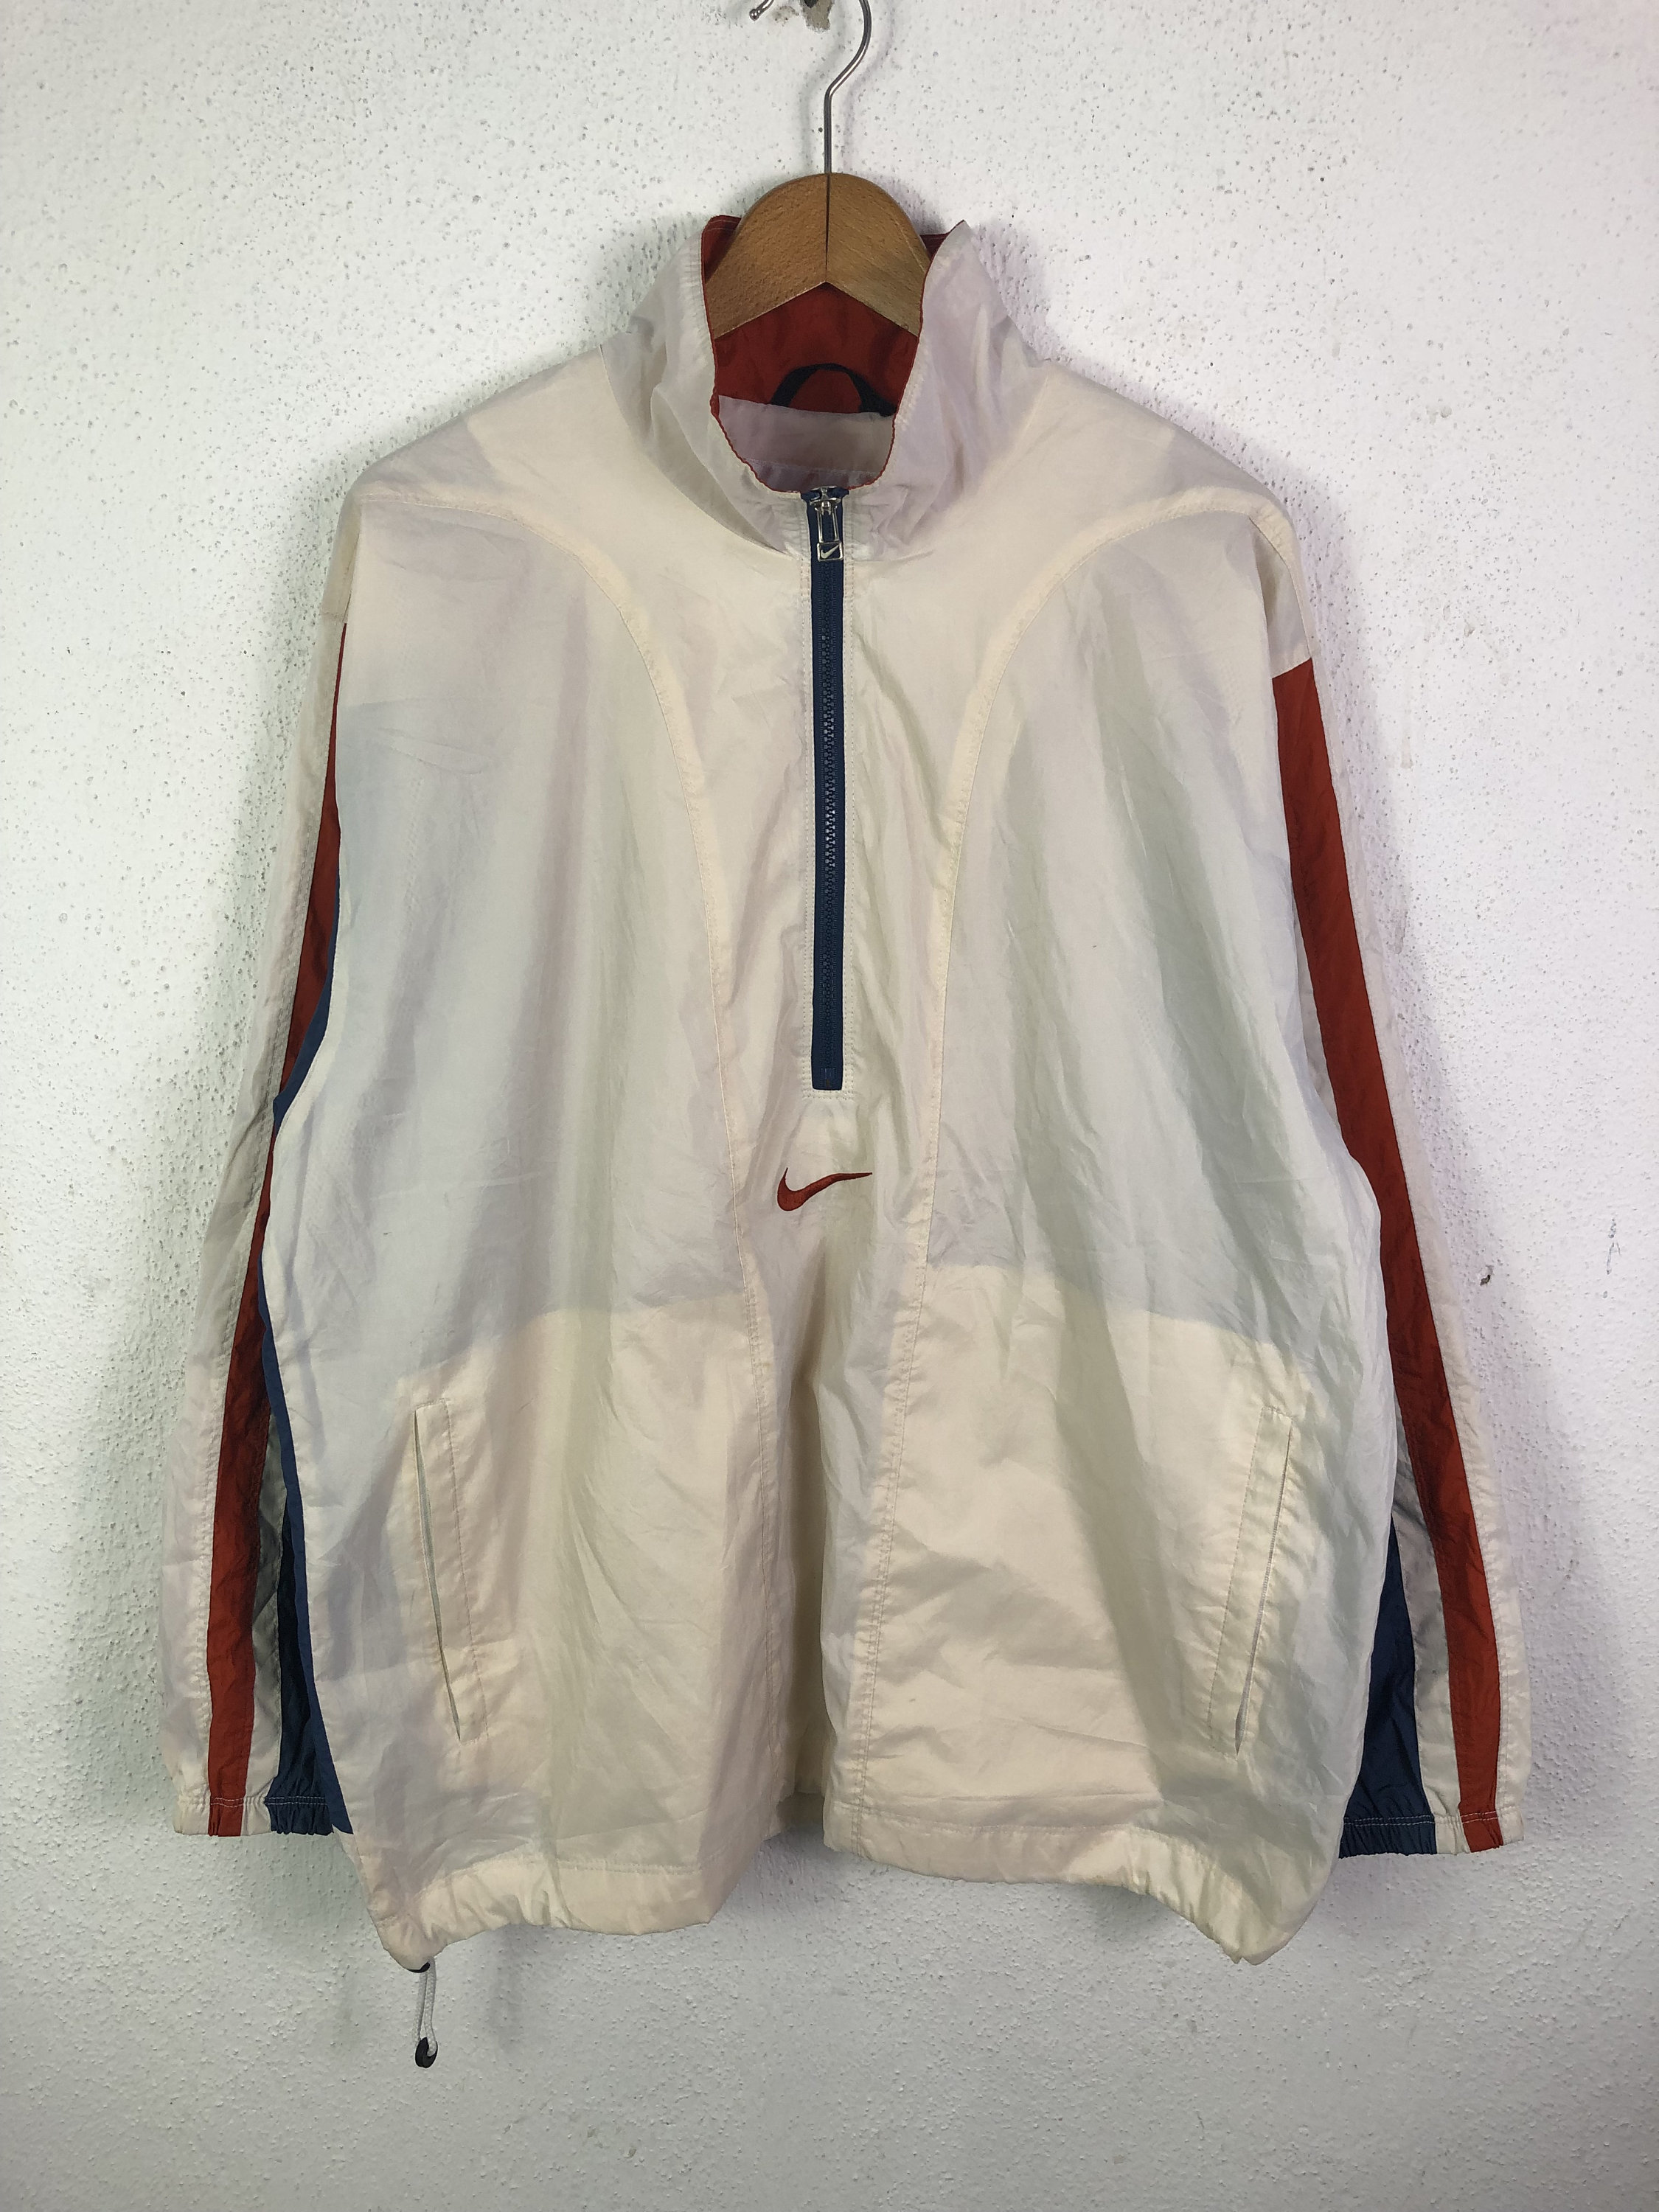 Vintage NIKE Swoosh Half Zipper Windbreaker Jacket Sportswear Nike ...